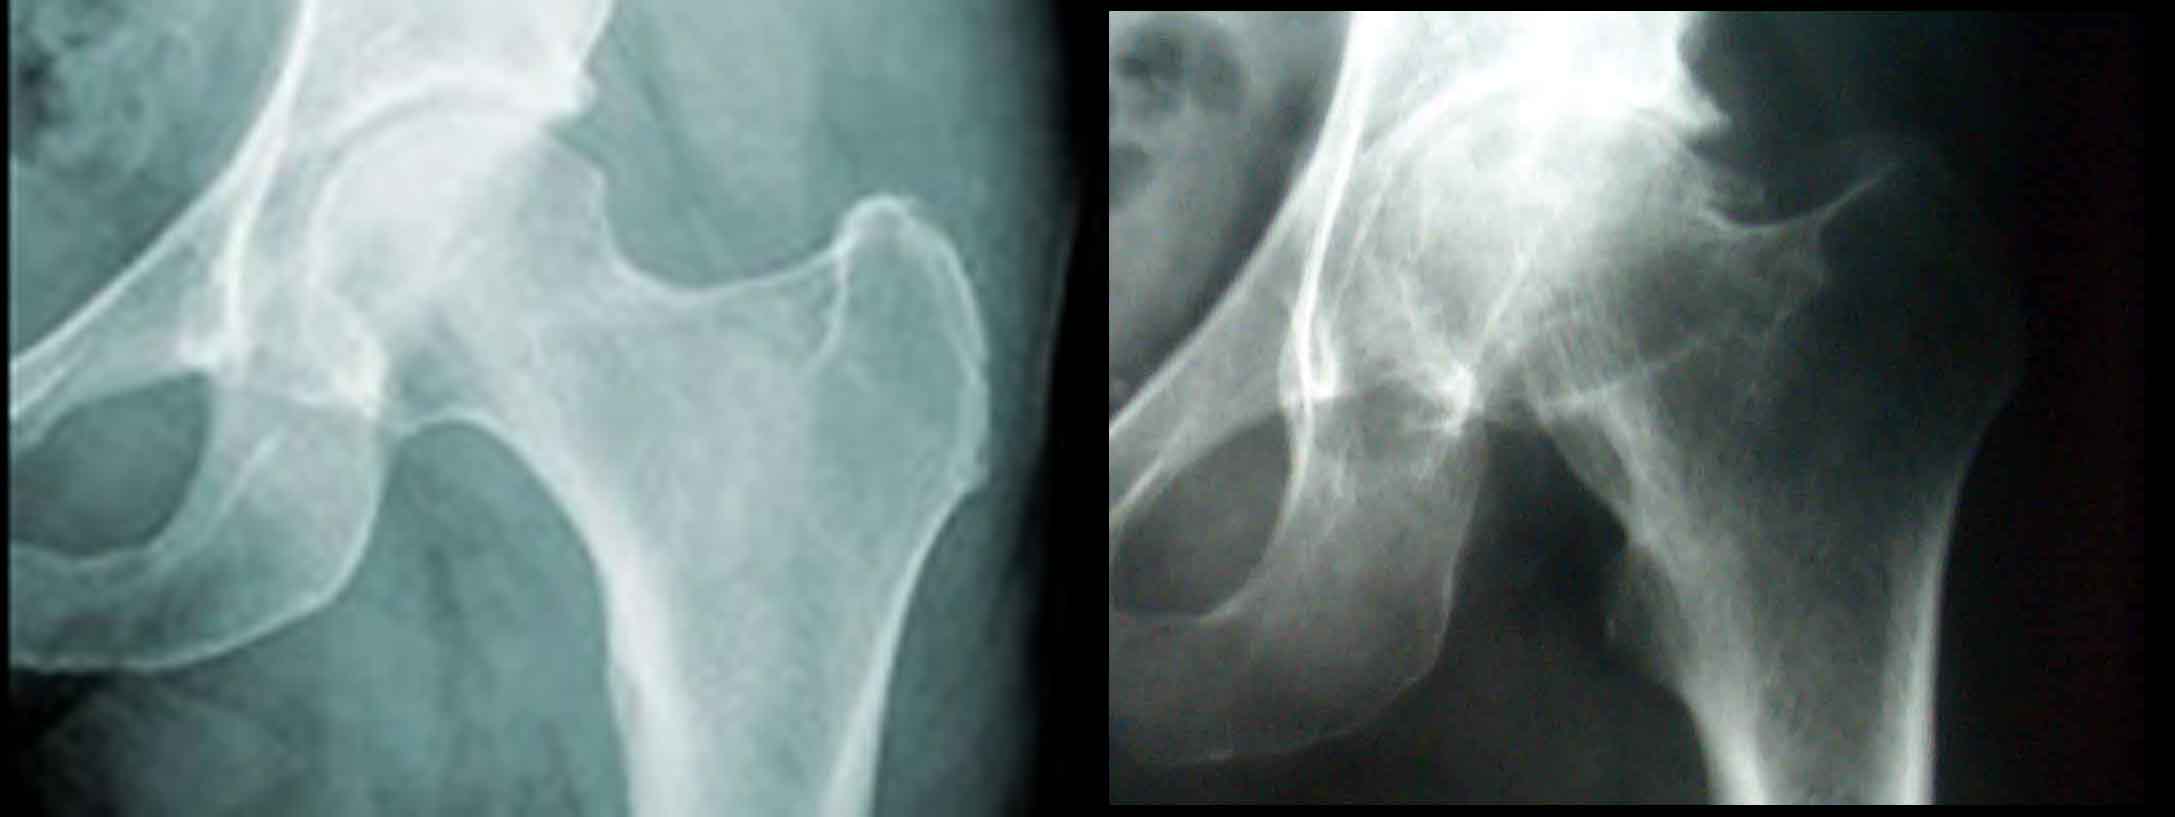 Radiografie di confronto tra anca sana e con artrosi